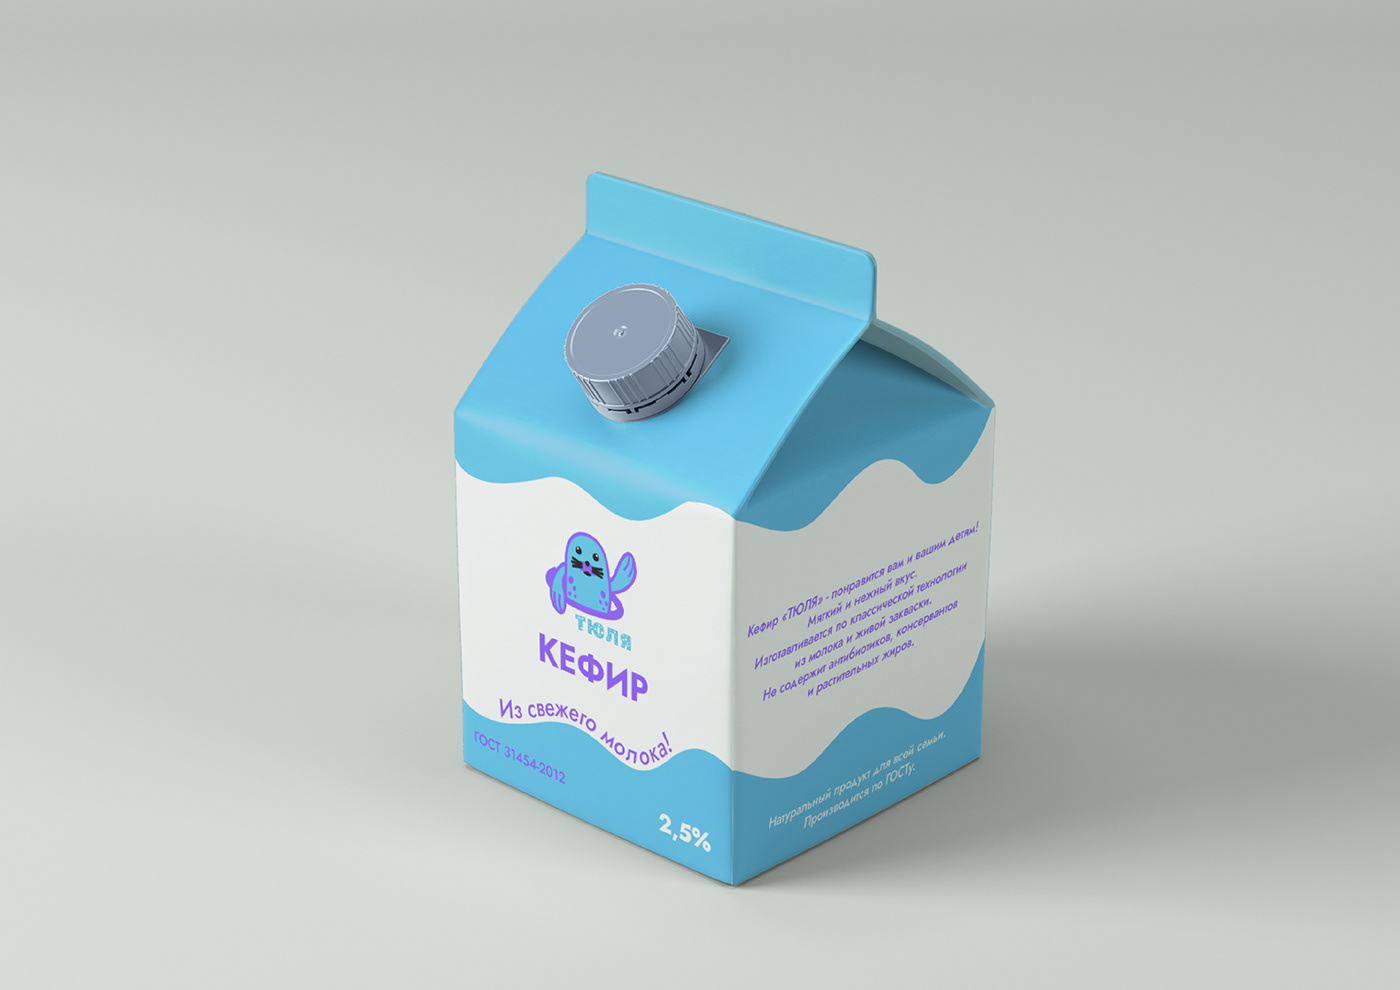 Logo Design Logotype milk Packaging packaging design product design  графический дизайн дизайн упаковки логотип молочная продукция